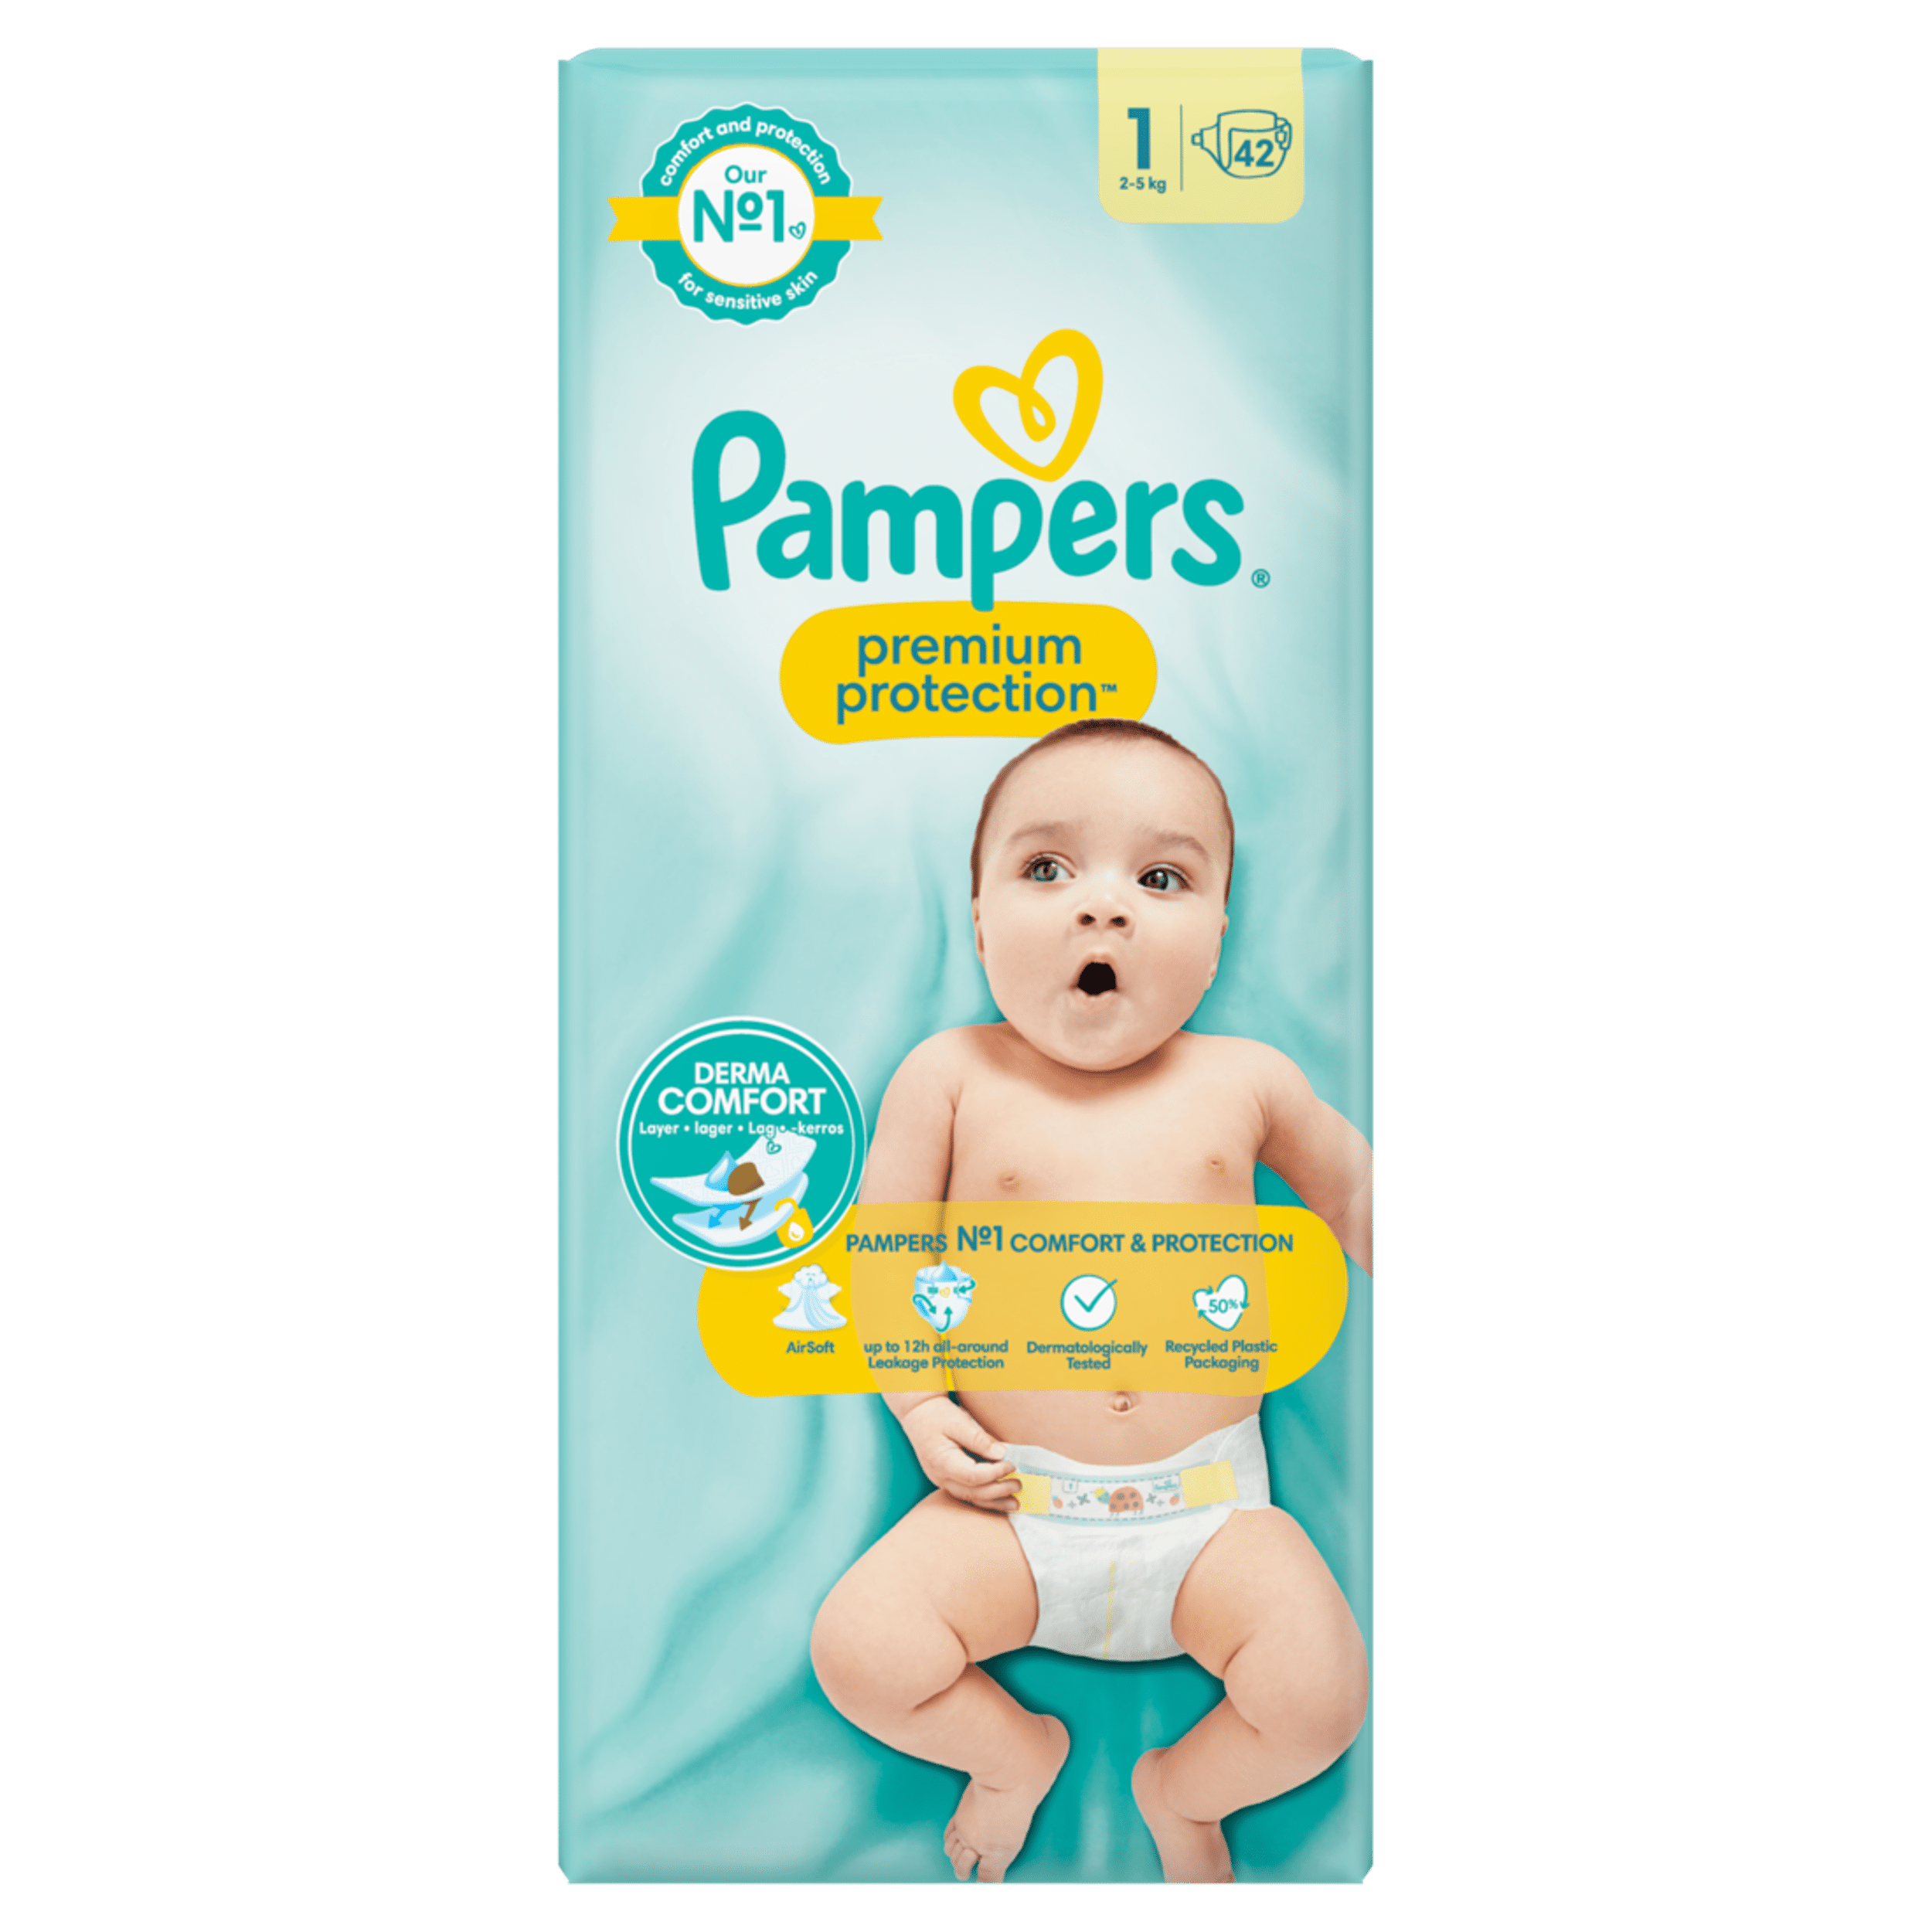 pampers new baby-dry rozmiar 2 mini 144 cena